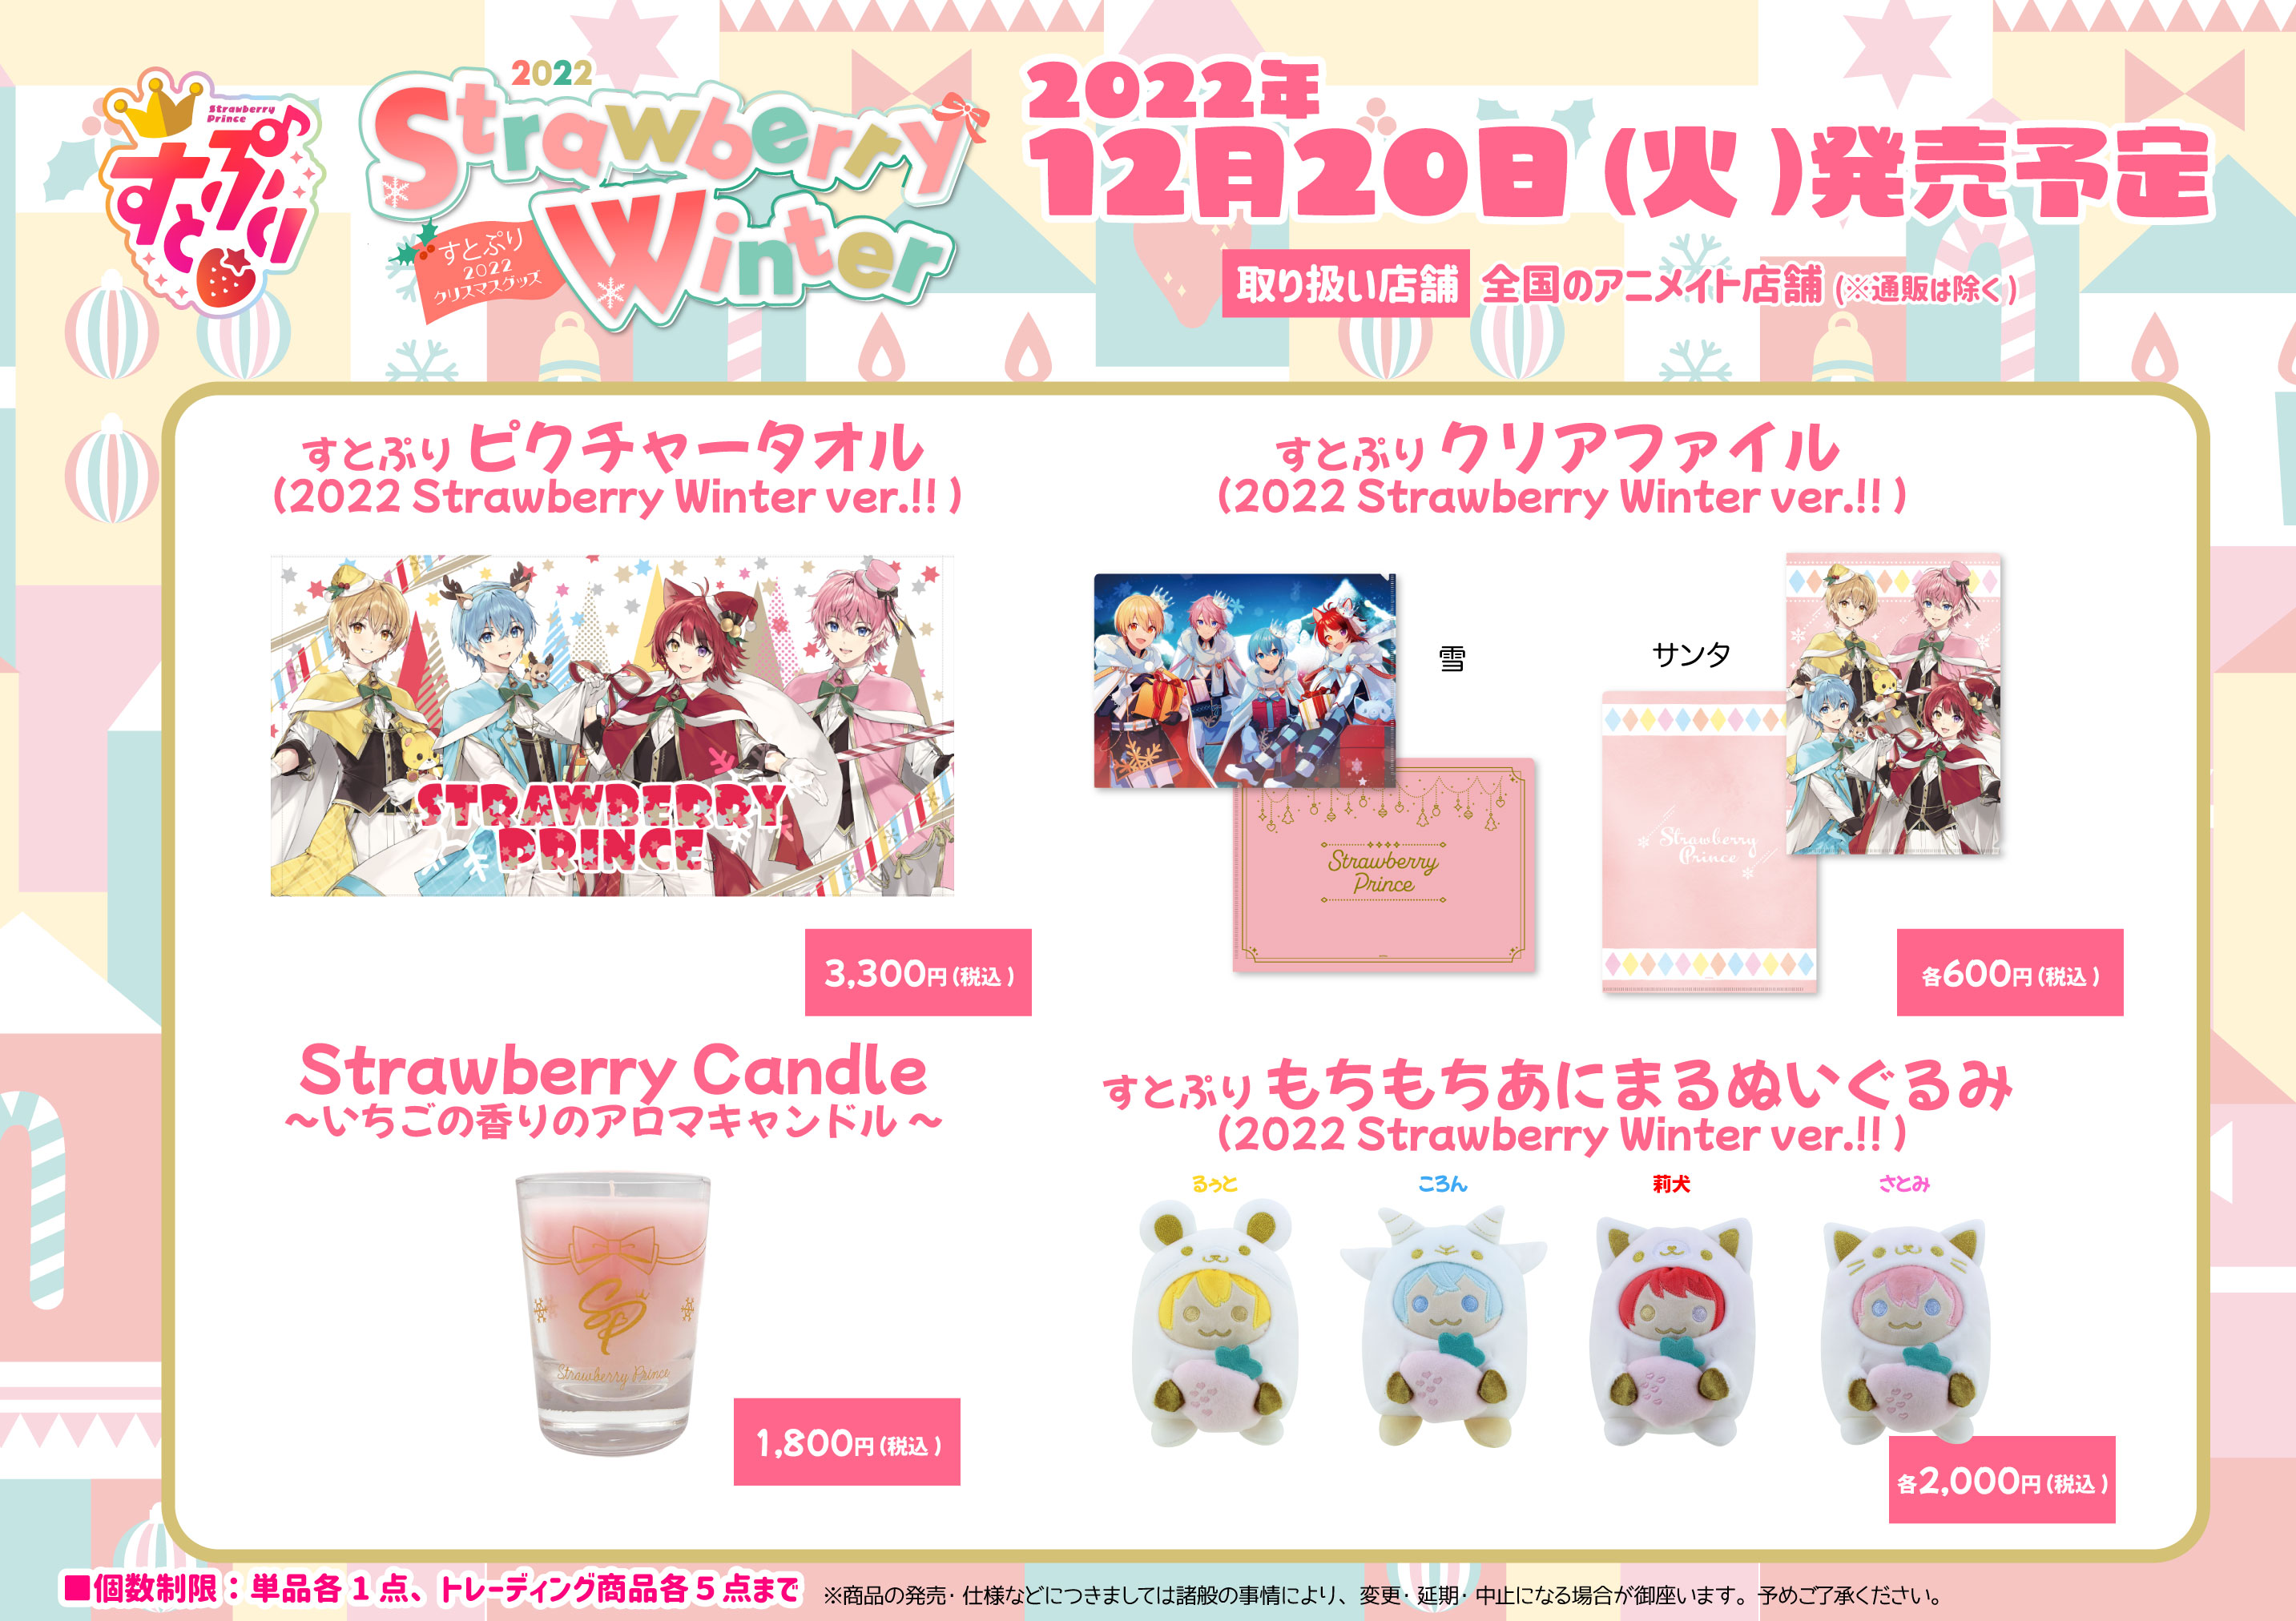 すとぷり 2022 Strawberry Winter グッズ」 12/20(火) 購入抽選